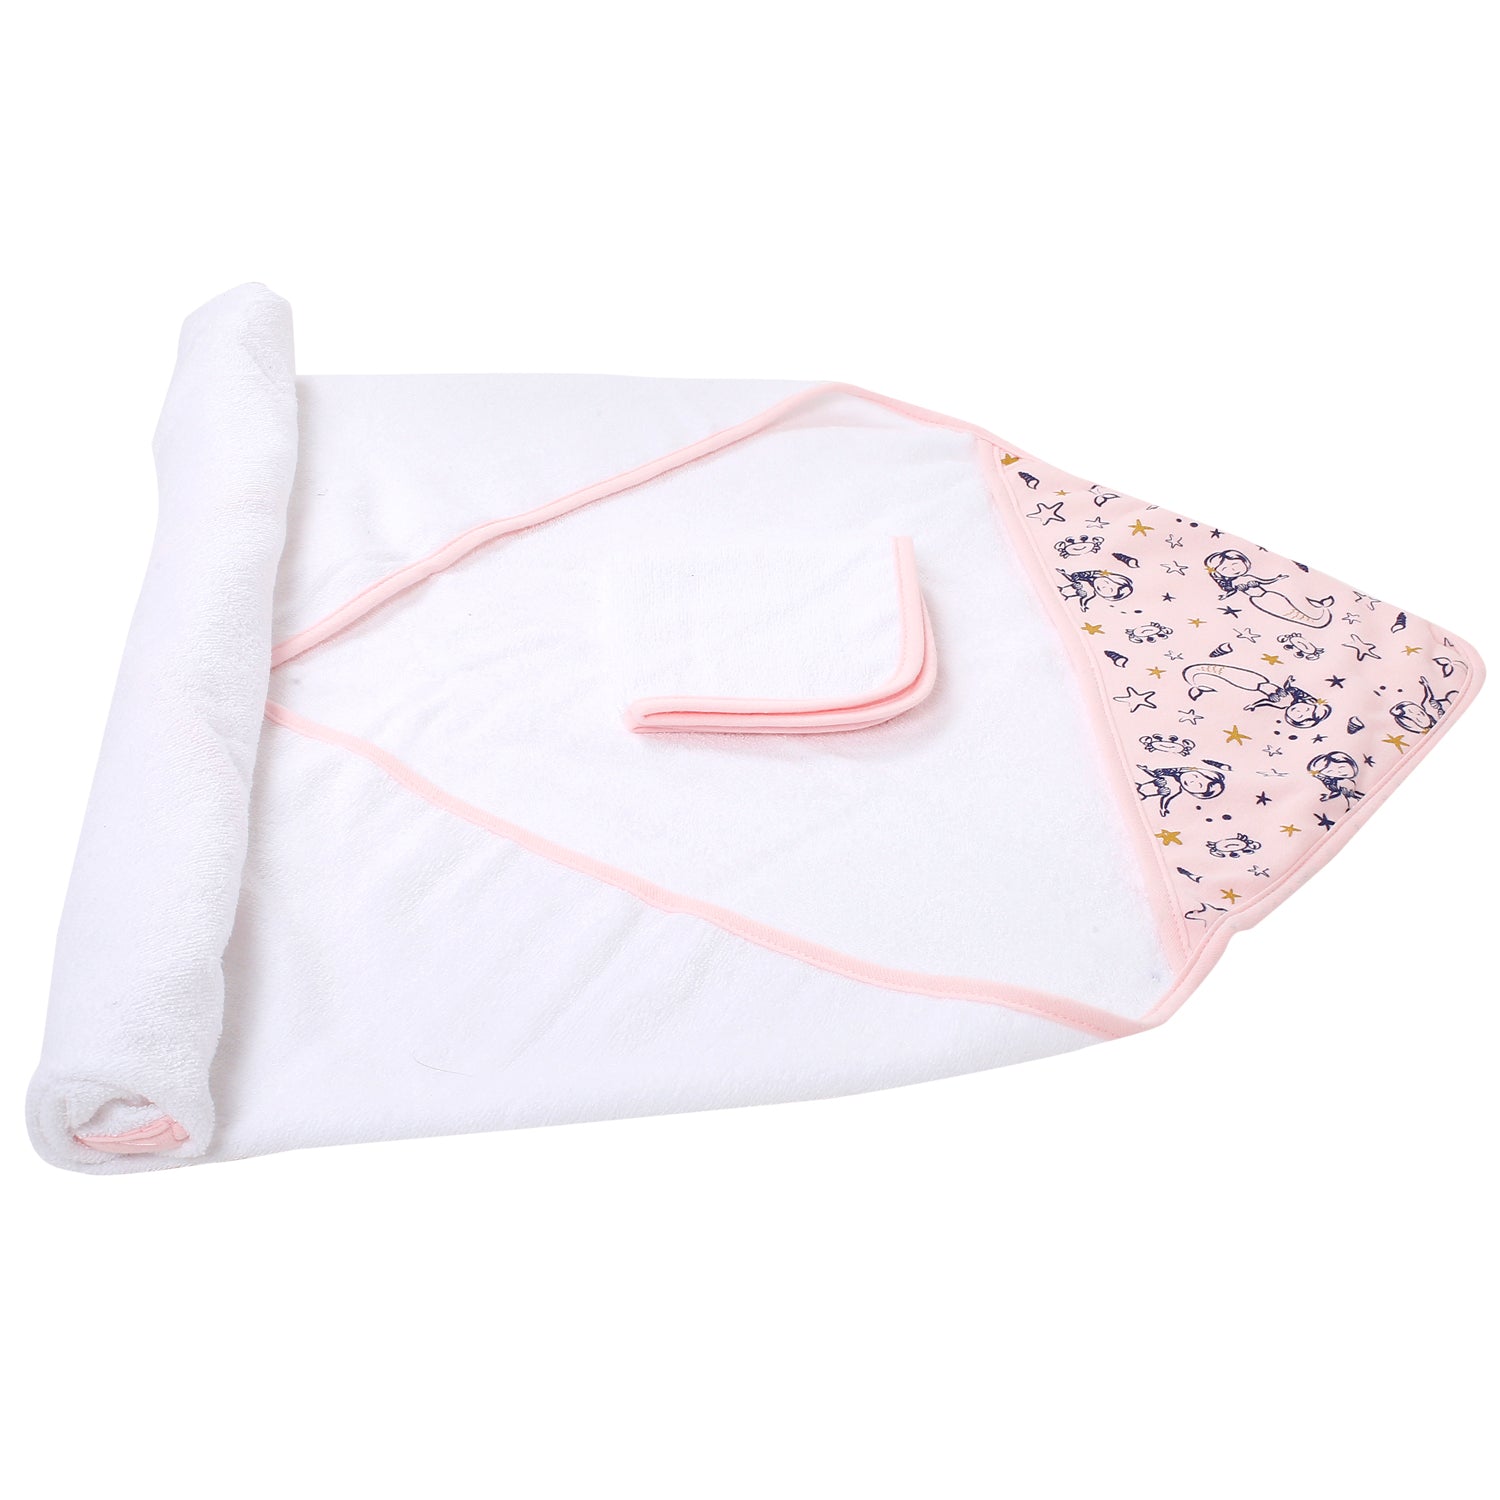 Mermaid Pink Hooded Towel & Wash Cloth Set